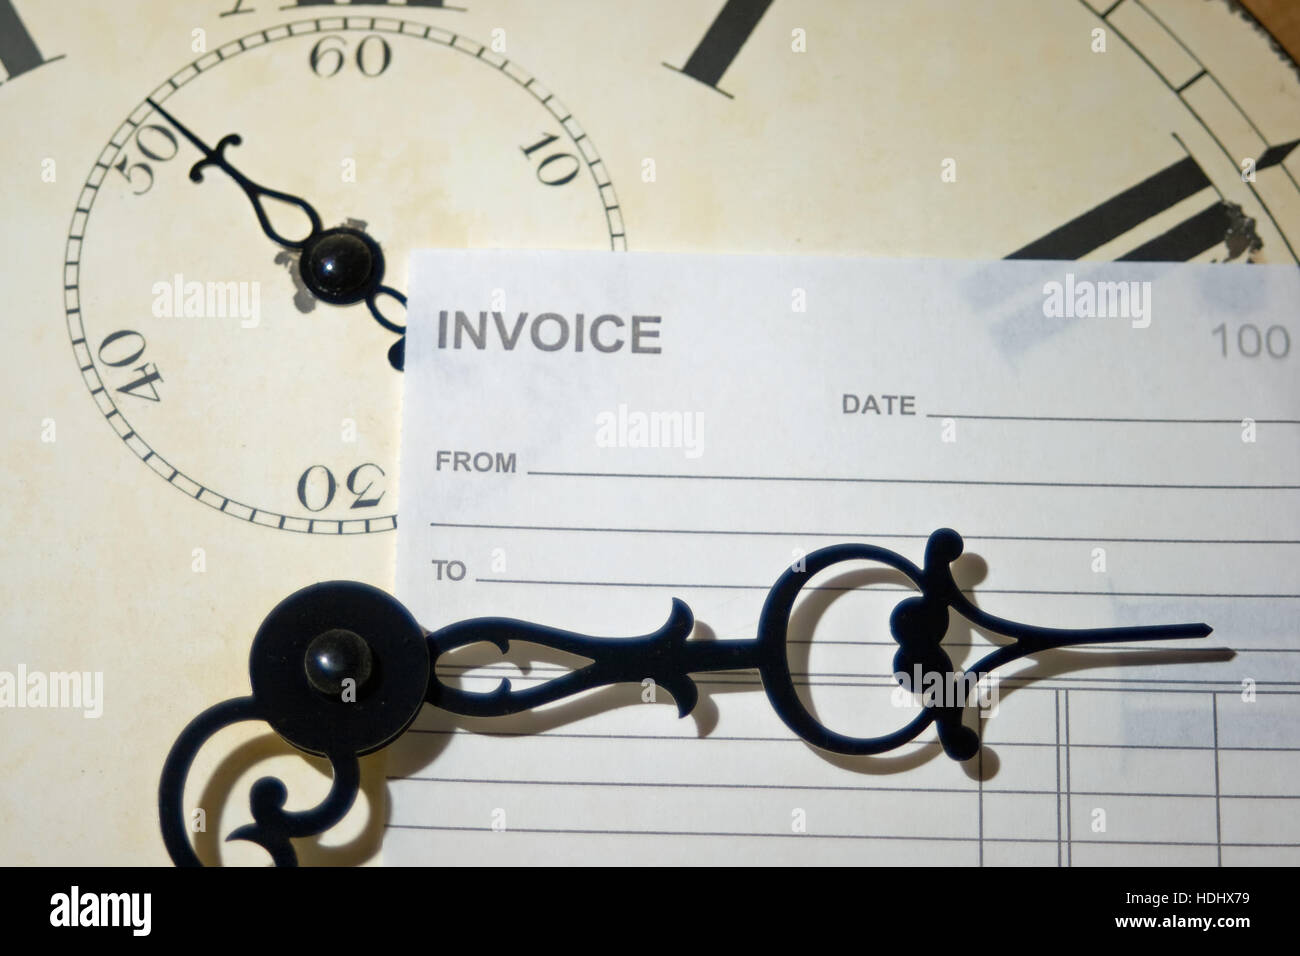 Rechnung und Uhr, was bedeutet das Konzept der Spruch "Zeit ist Geld". Stockfoto